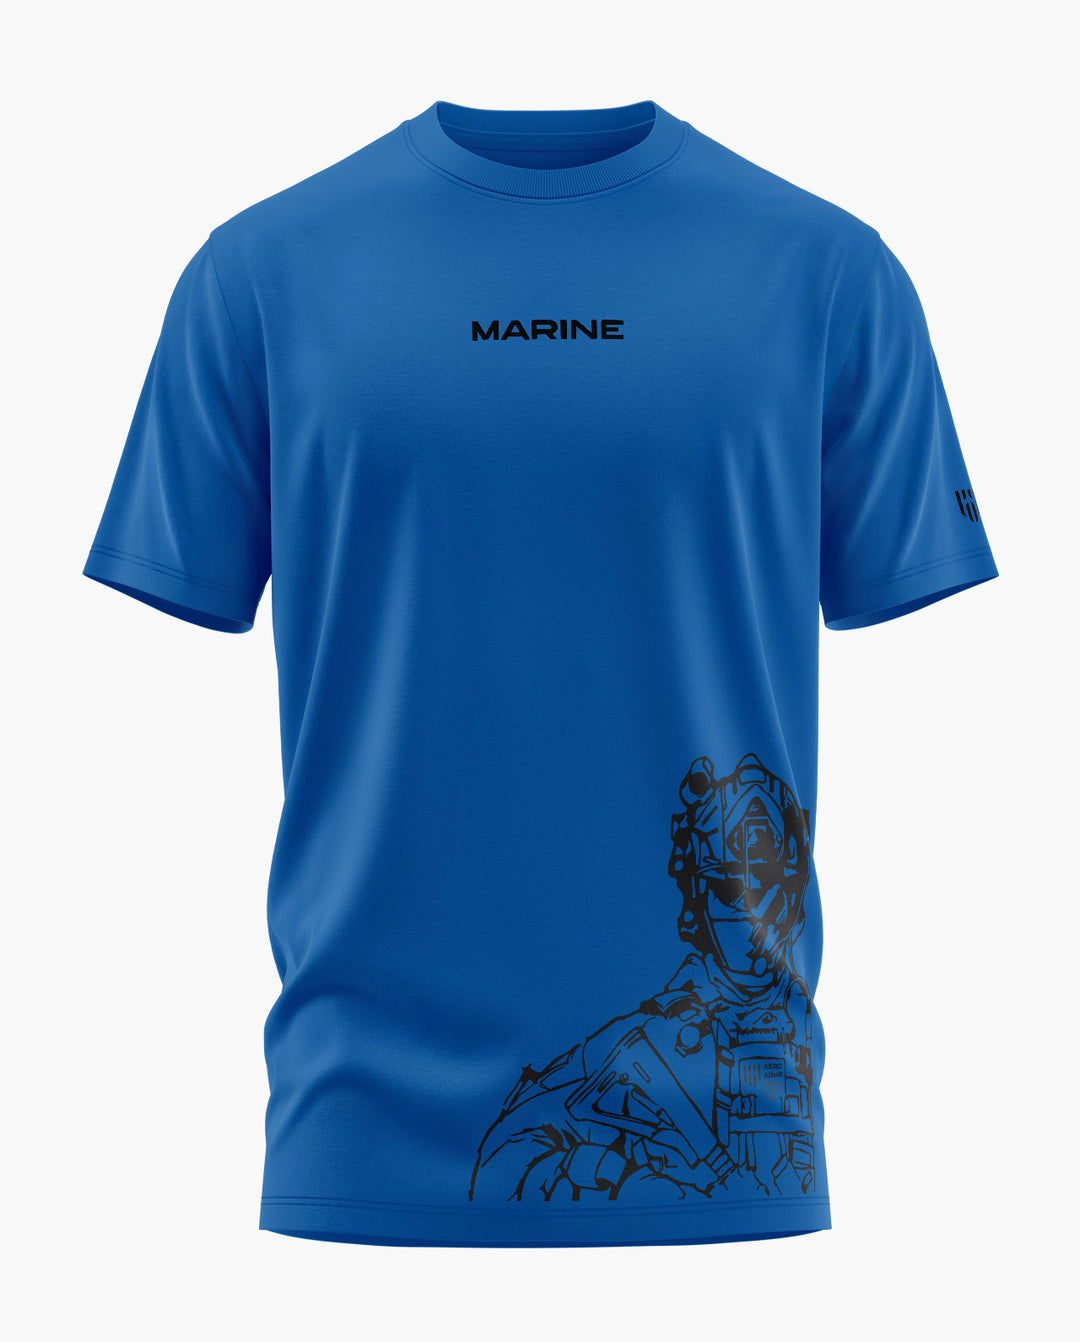 Marine T-Shirt